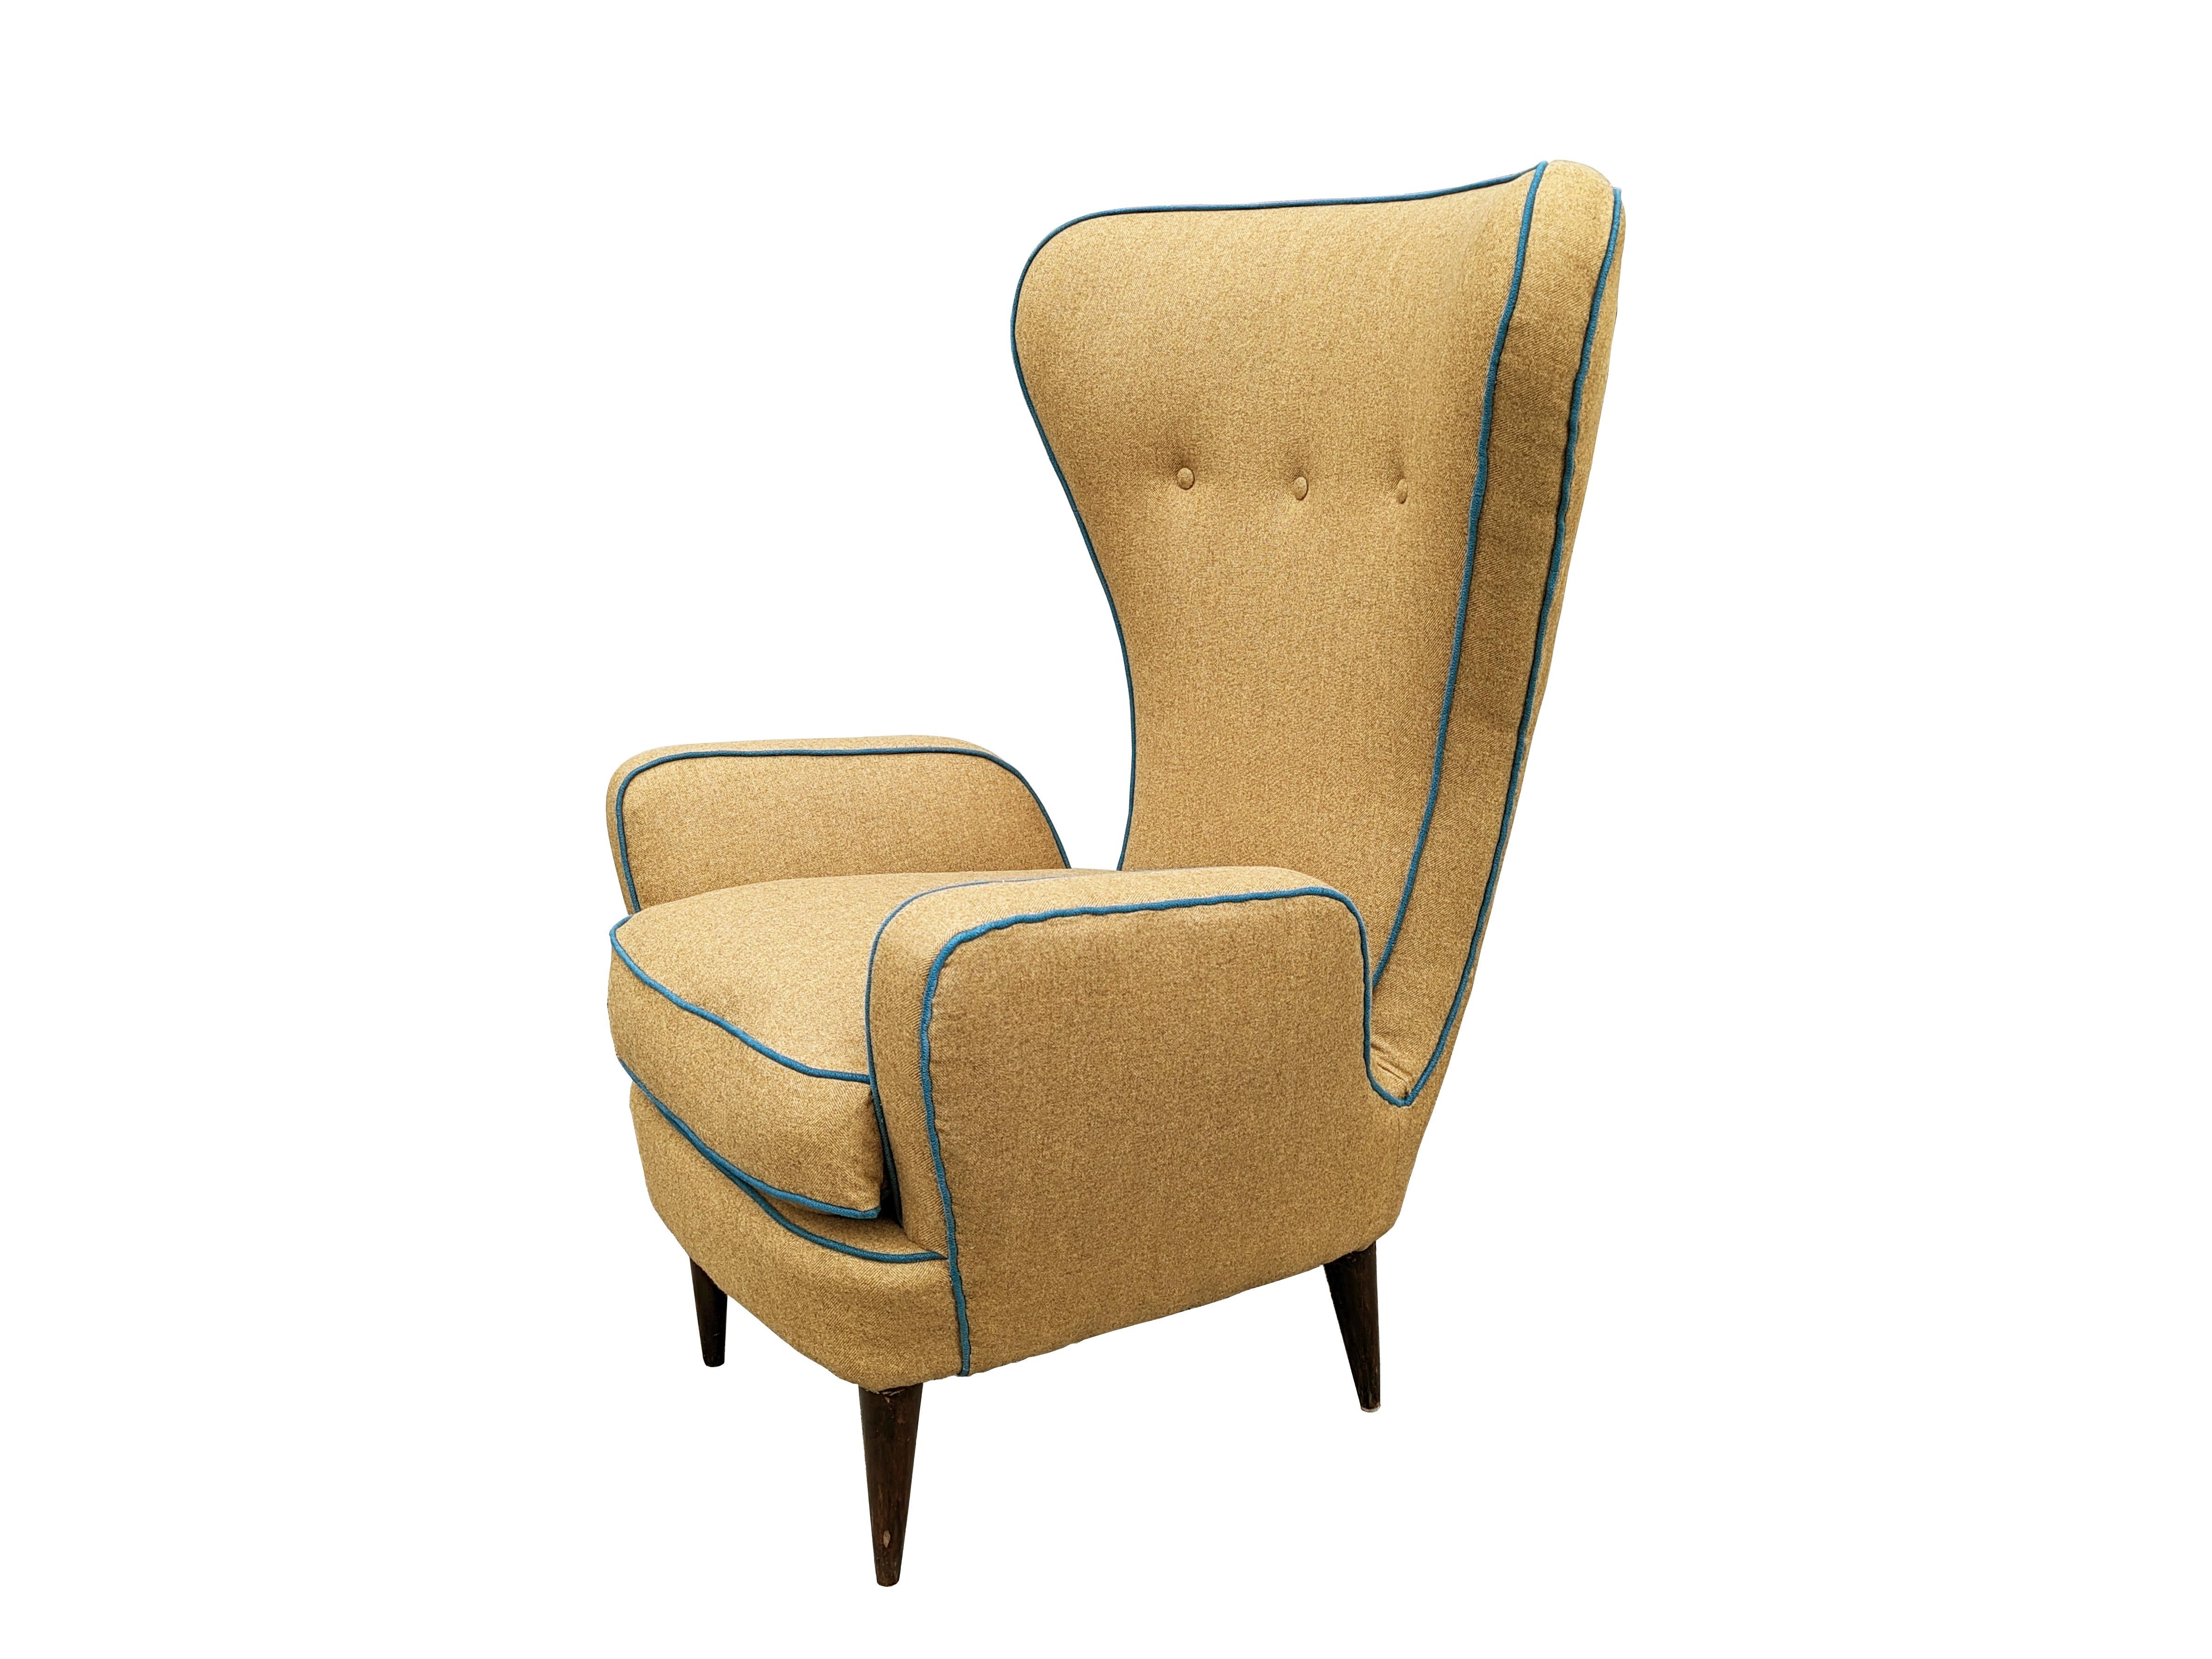 Dieser skulpturale Sessel mit hoher Lehne wurde von Emilio Sala und Giorgio Madini in den 1950er Jahren für die Möbelfabrik Fratelli Galimberti entworfen. Der Sessel wurde komplett neu gepolstert und mit eleganter Wolle in Kamel- und Tealfarben